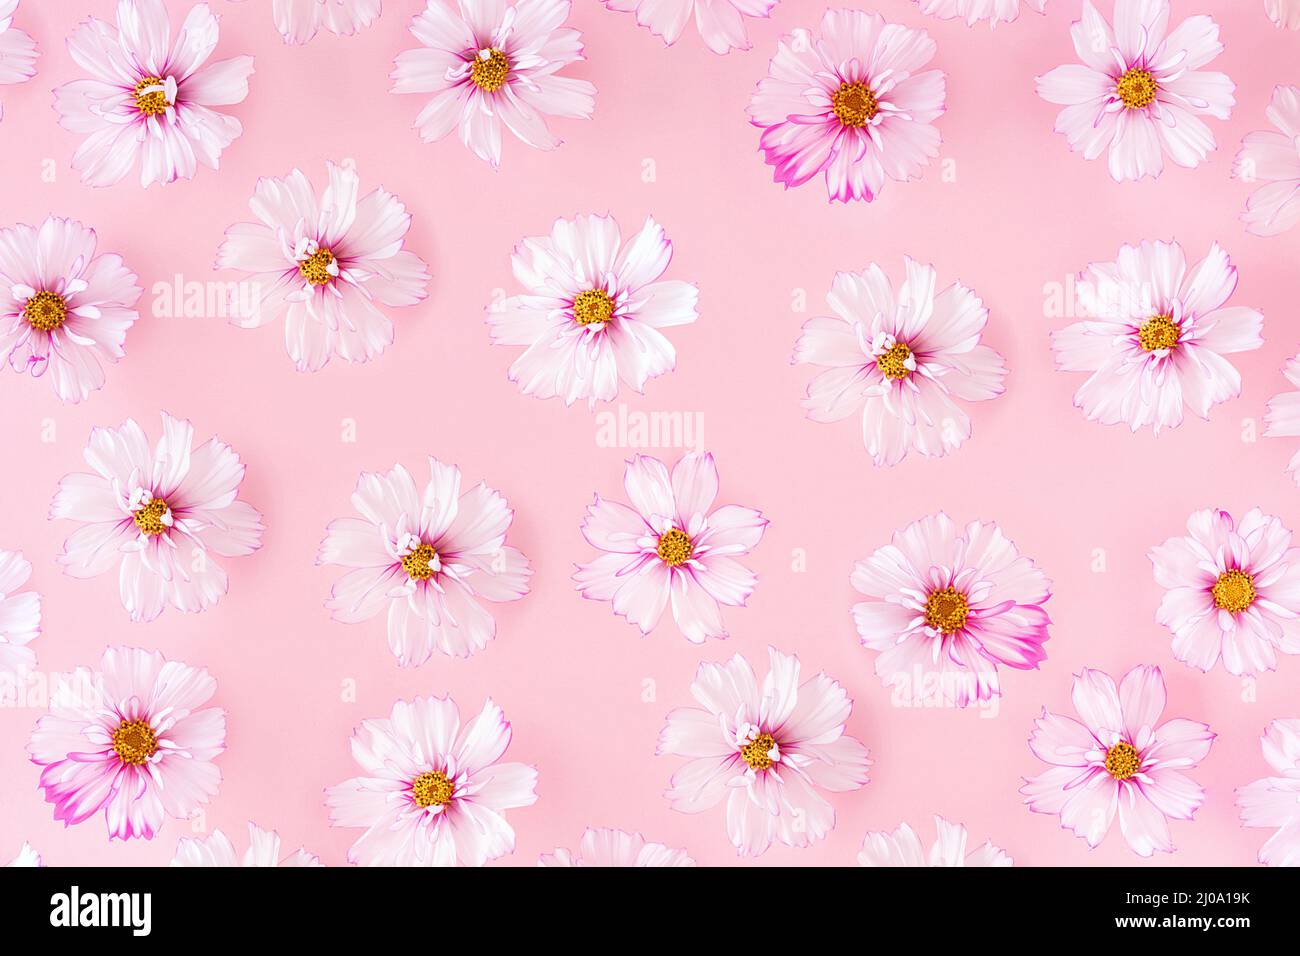 Motif composé de fleurs délicates sur fond rose, comme toile de fond ou texture. Concept floral minimaliste. Papier peint pour votre conception. Banque D'Images